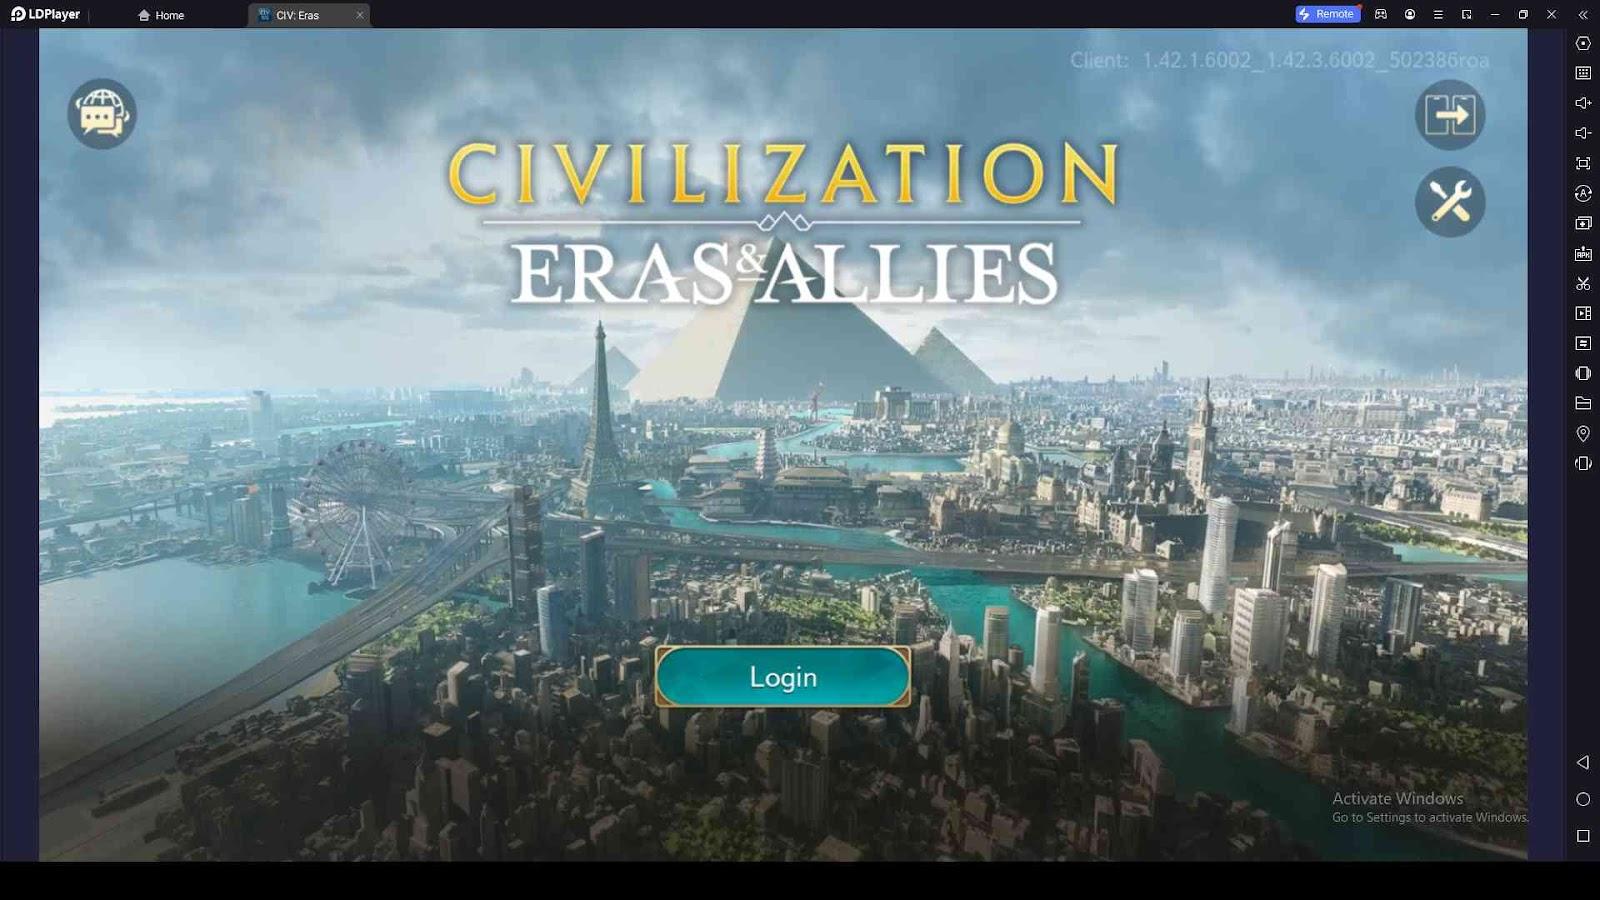 Civilization Eras & Allies 2K Codes Guide